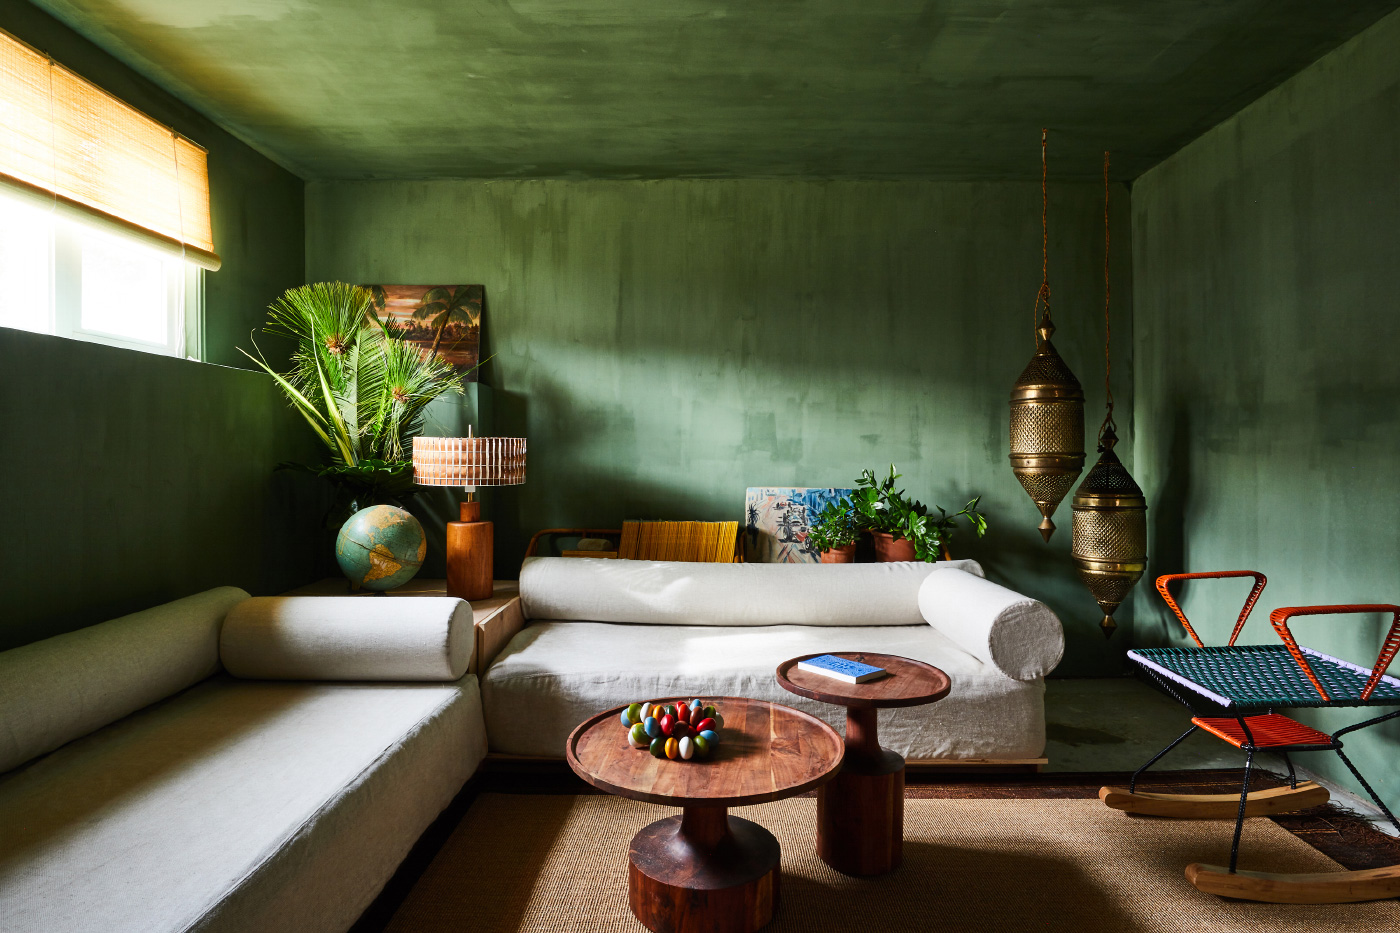 蒙托克的一个绿色房间的内部照片，只有一扇窗户和明亮通风的家具